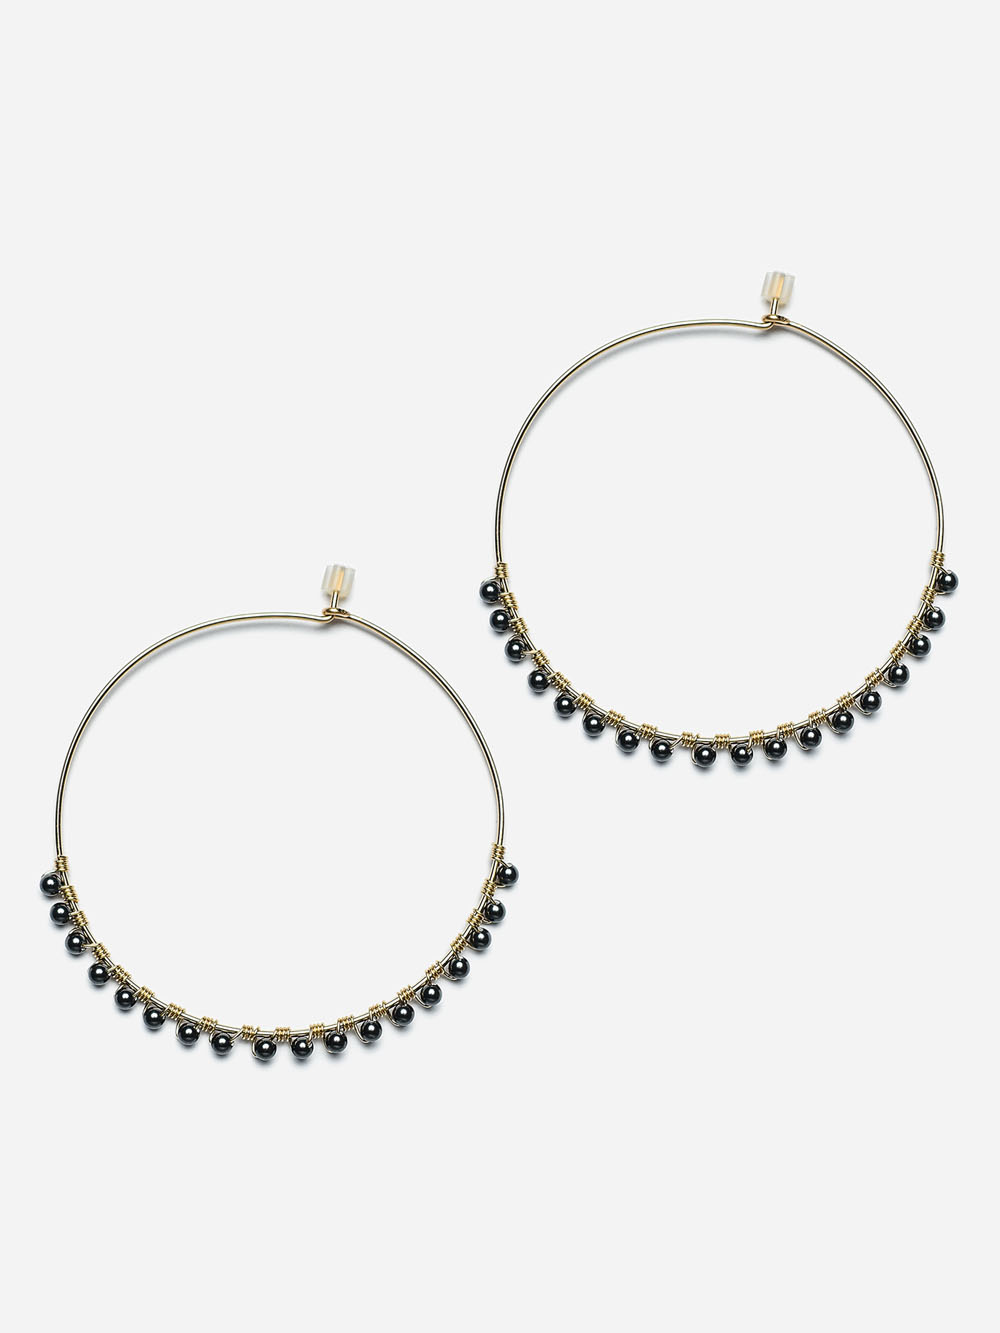 14k gold filled hoop earrings with black pearls